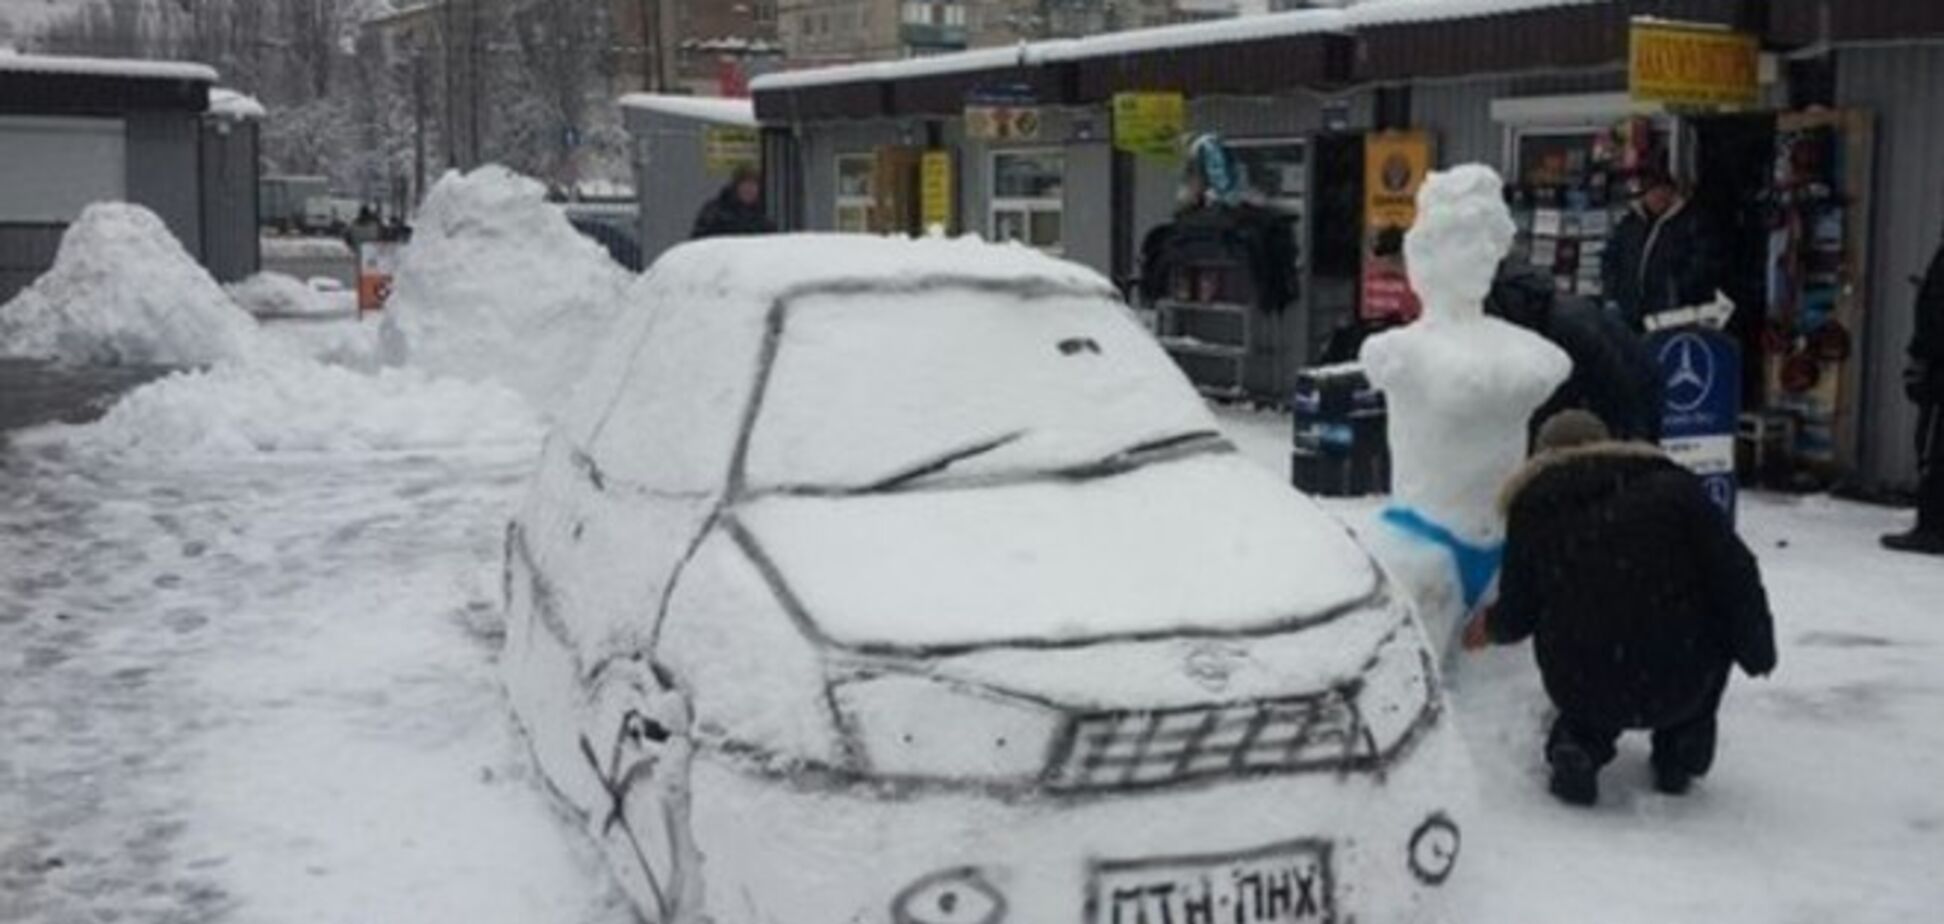 В Киеве слепили машину-'снеговик' с номерами ПТН-ПНХ: фотофакт